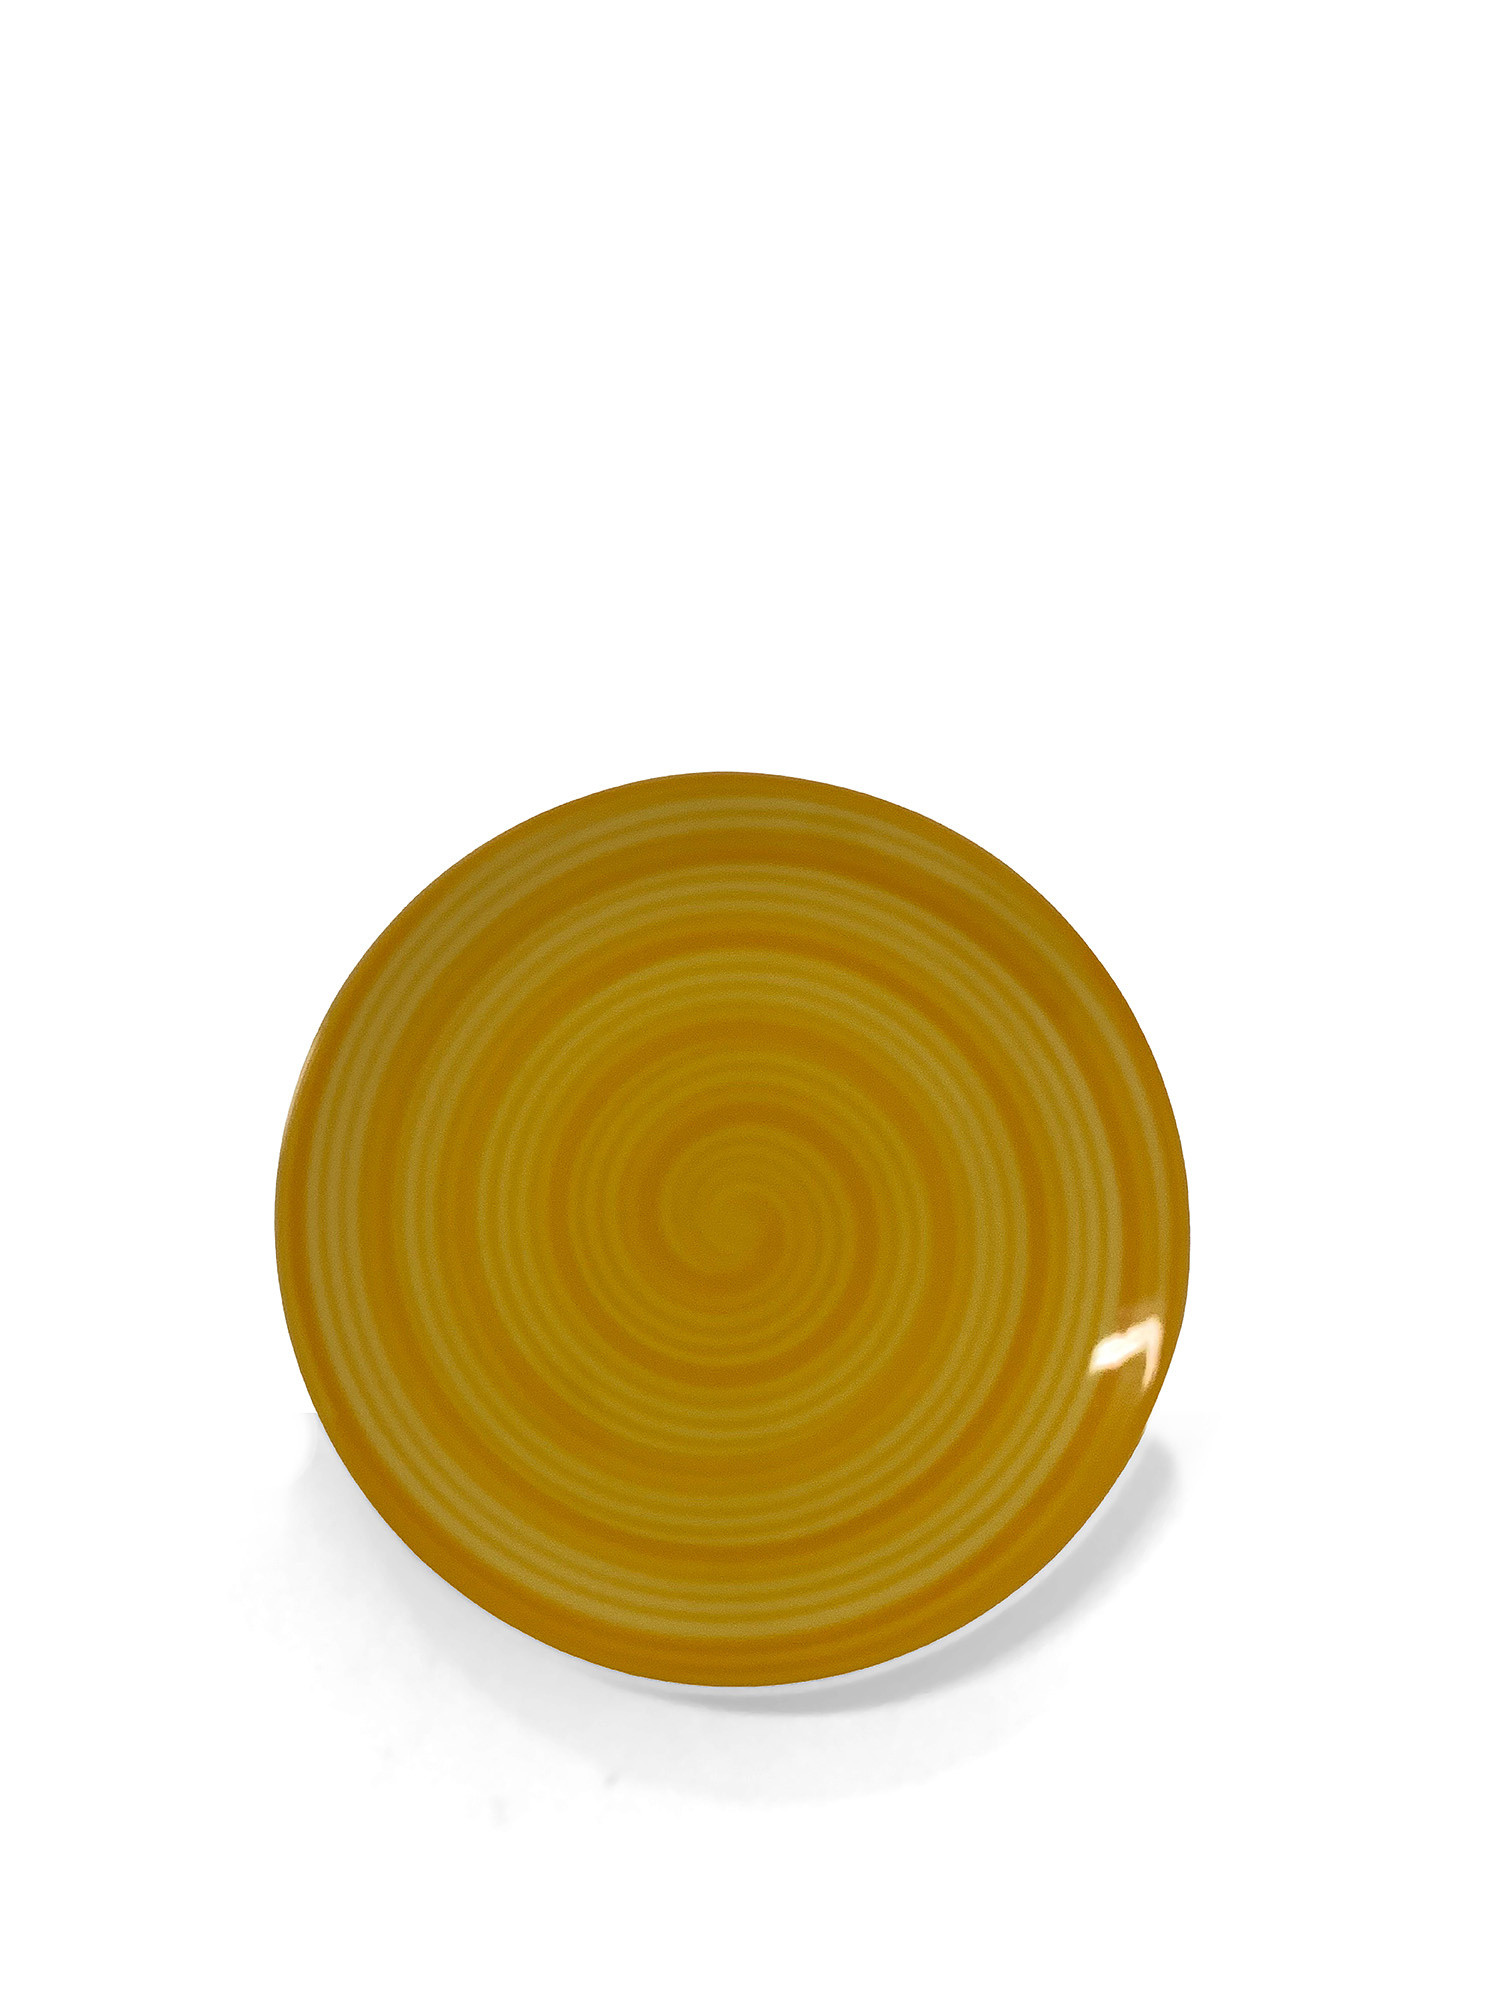 Piatto frutta ceramica dipinta a mano Spirale, Giallo, large image number 0